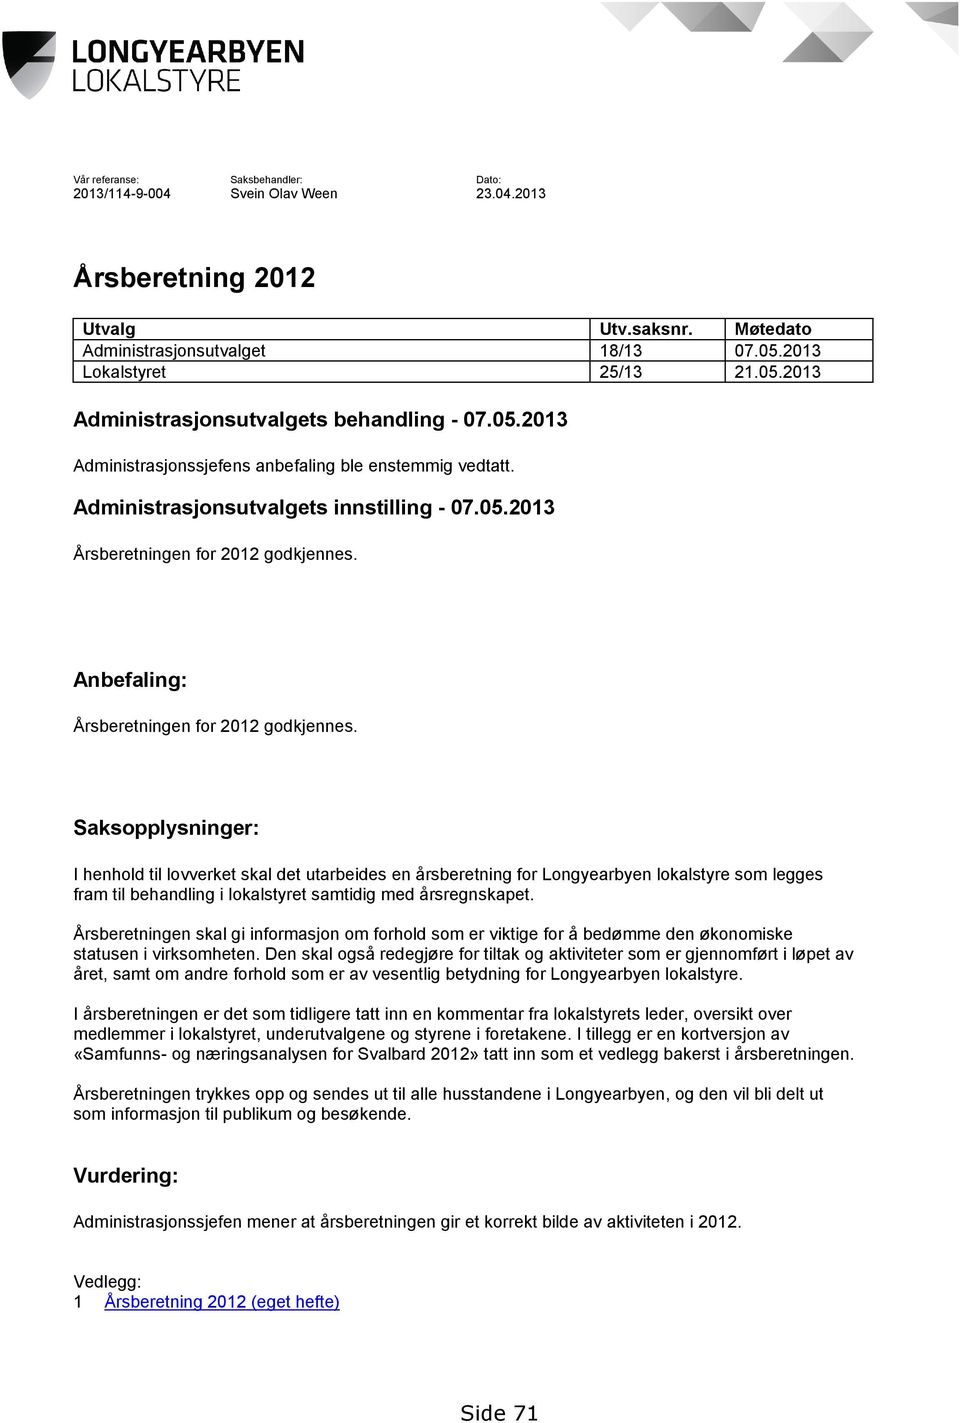 Anbefaling: Årsberetningen for 2012 godkjennes.